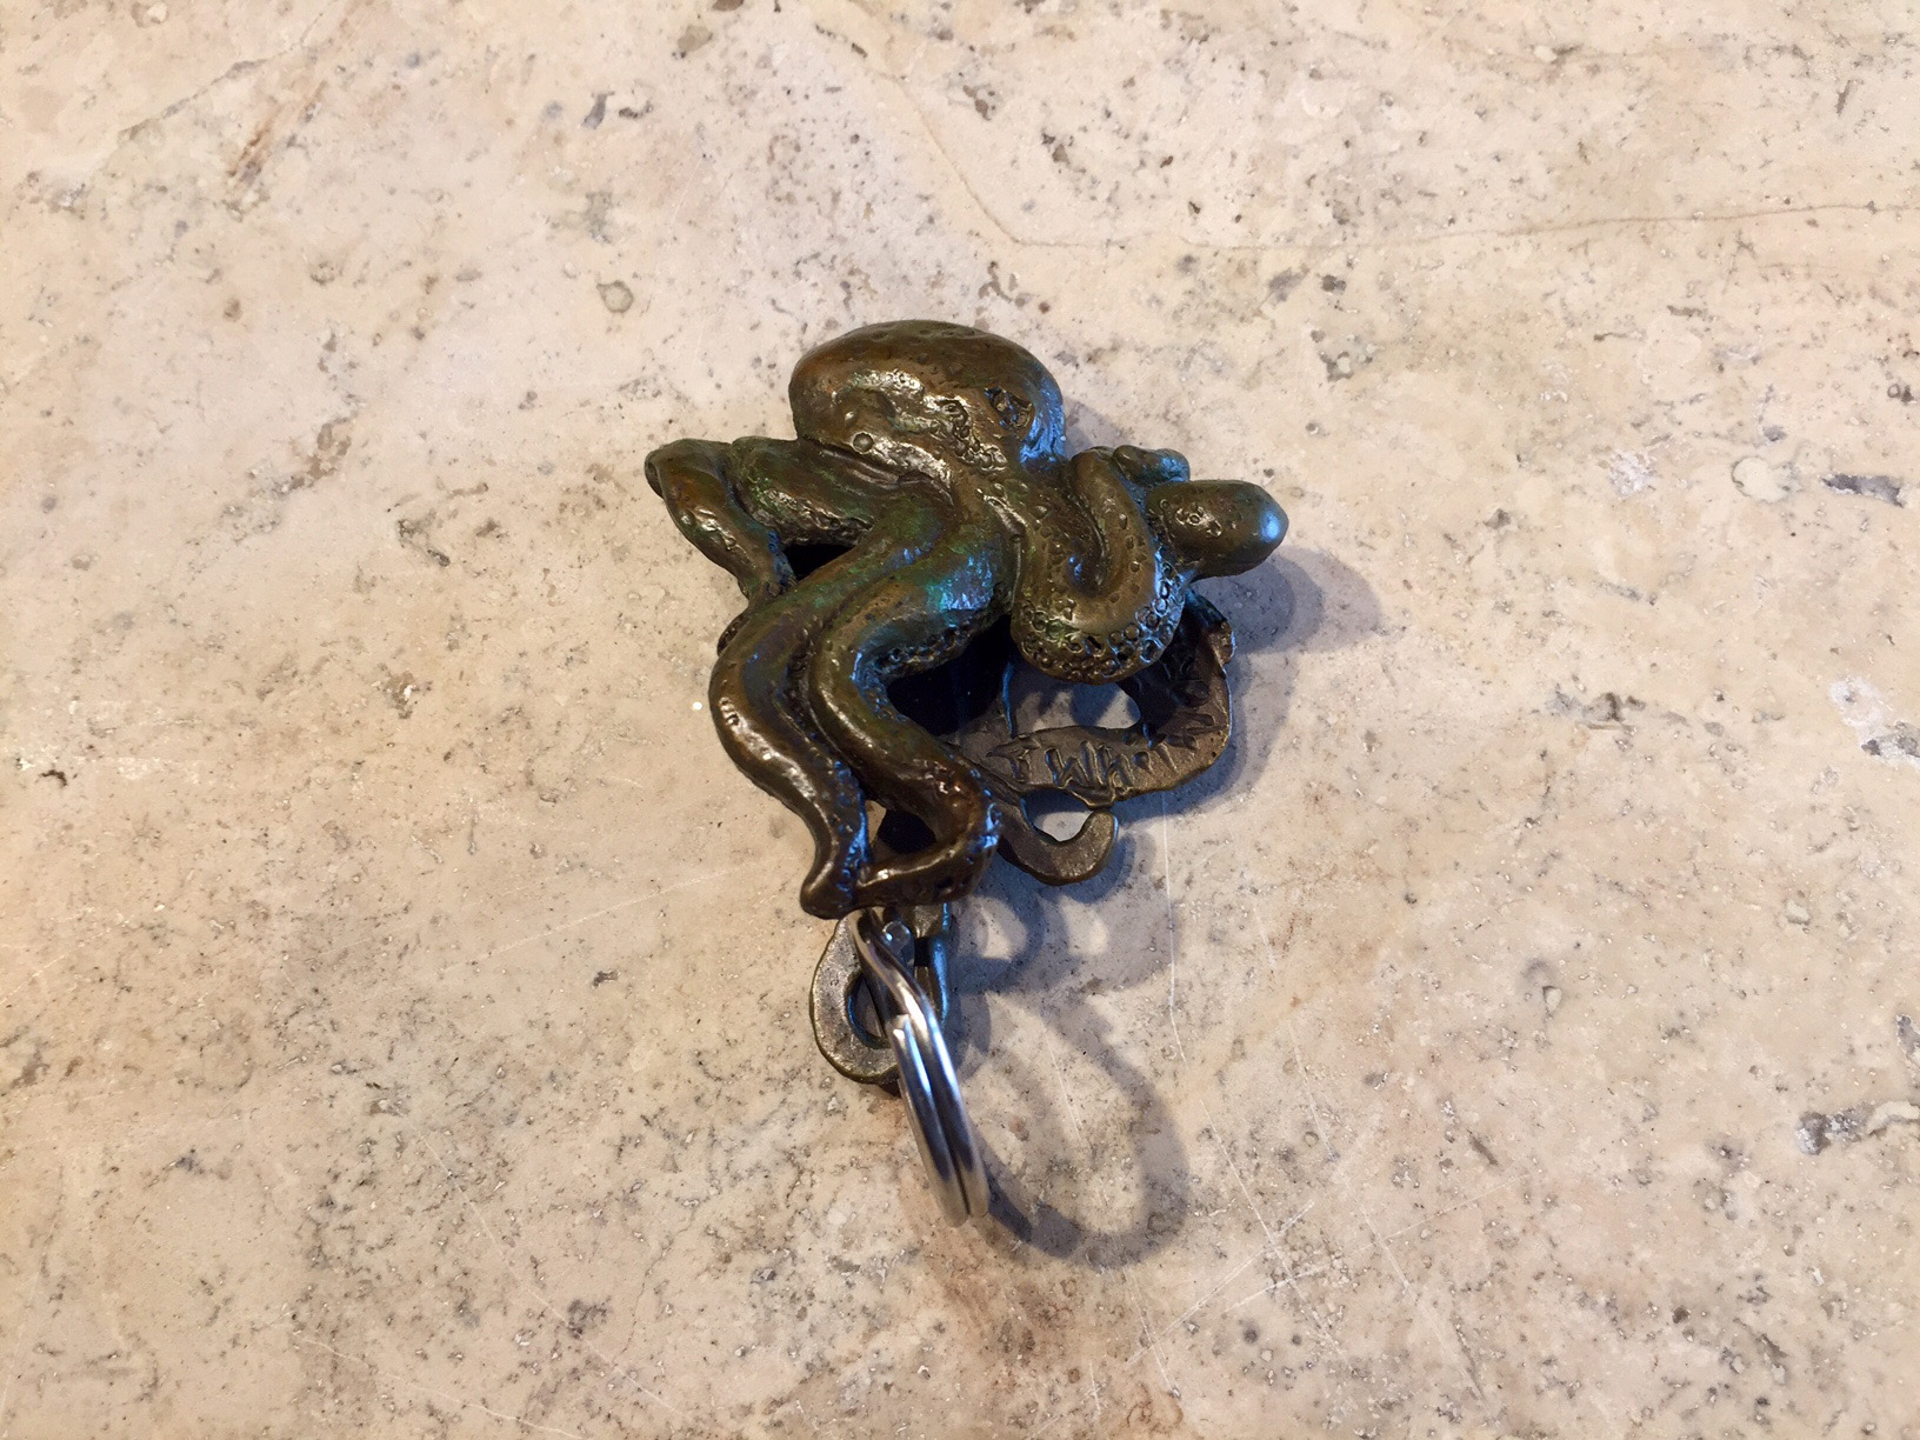 Octopus Keybob by Tim Whitworth